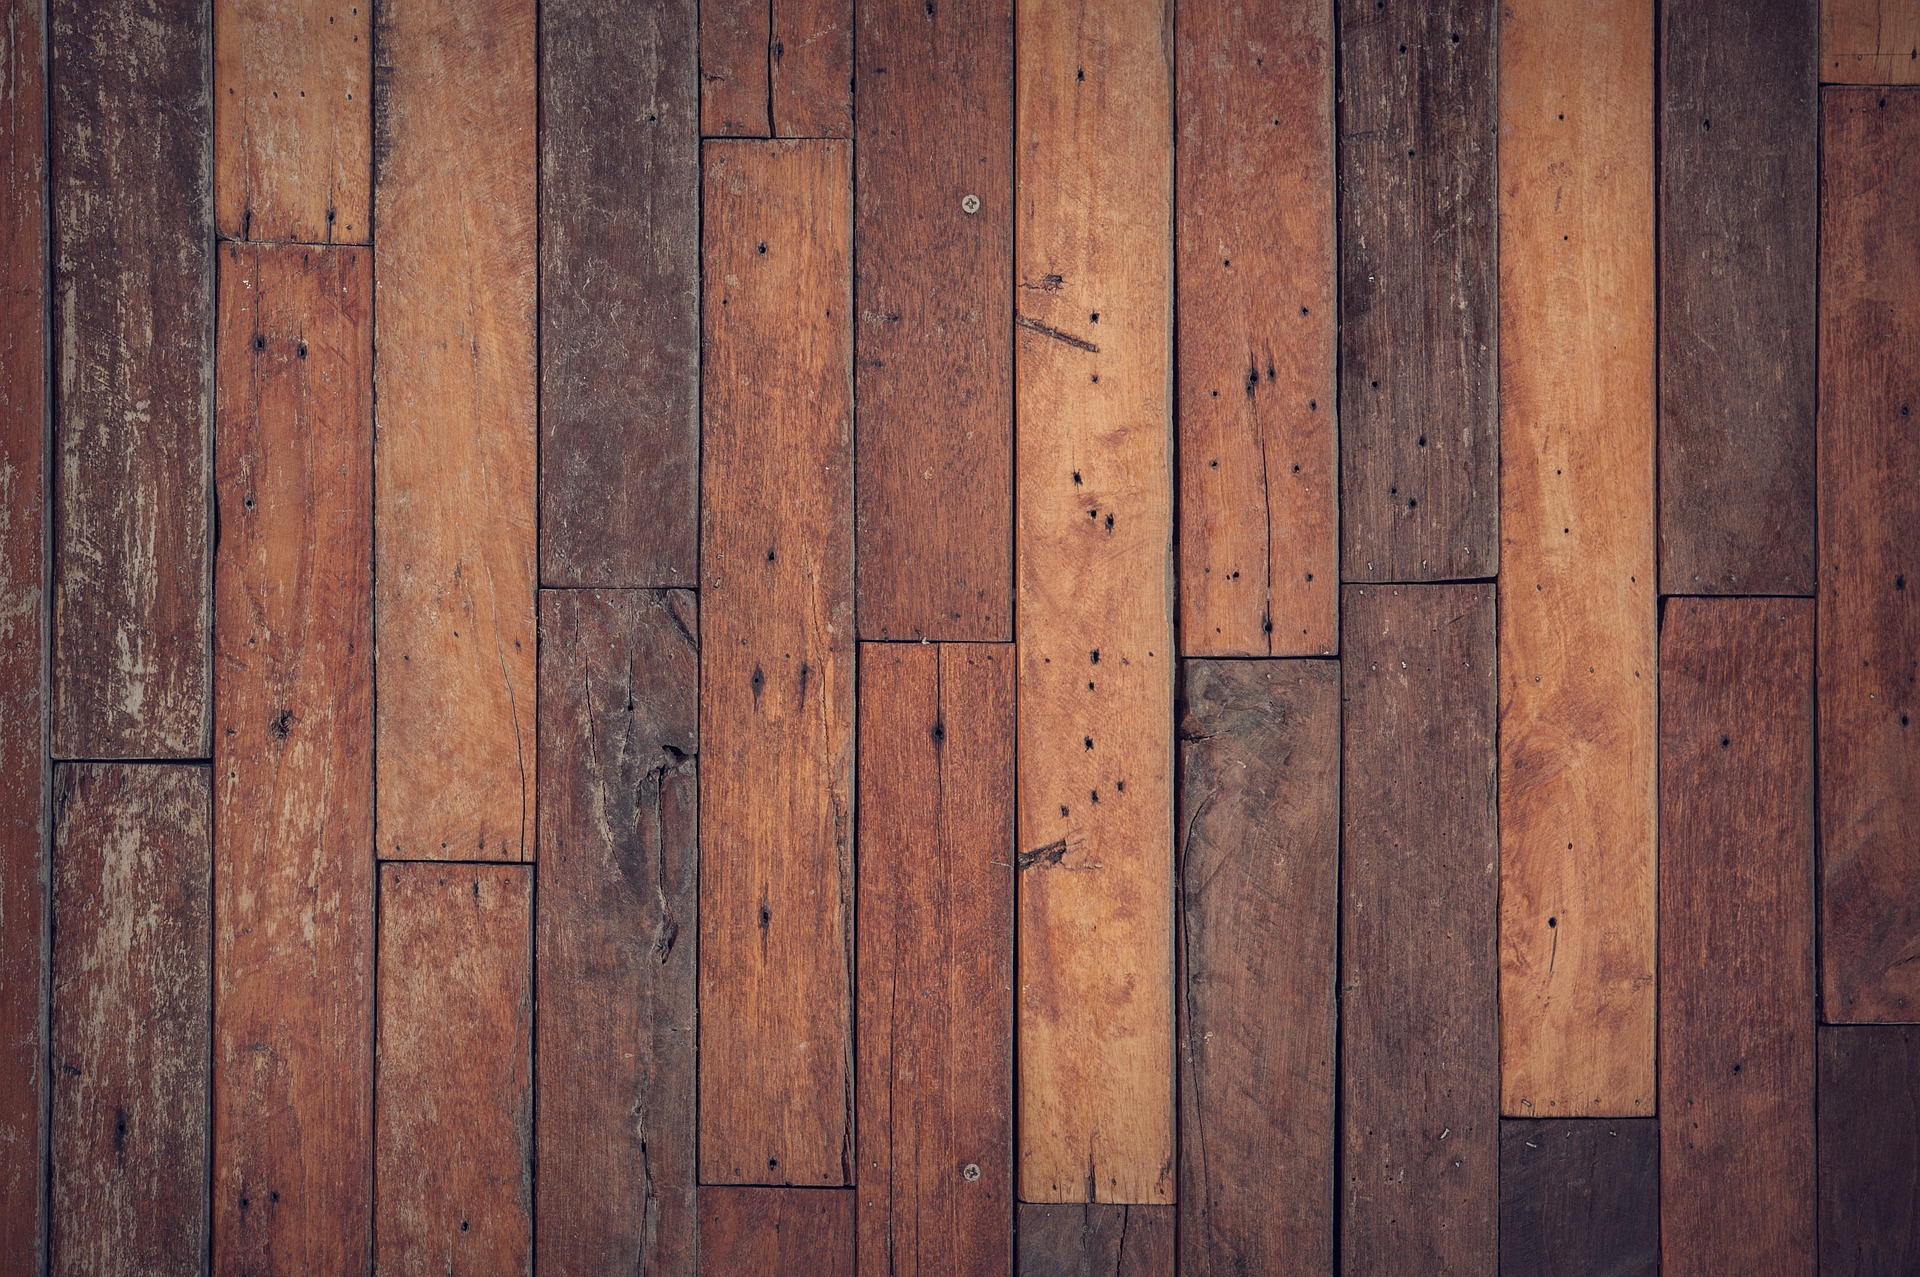 Voor iedereen de ideale vloer #vloer #houtenvloer #interieur